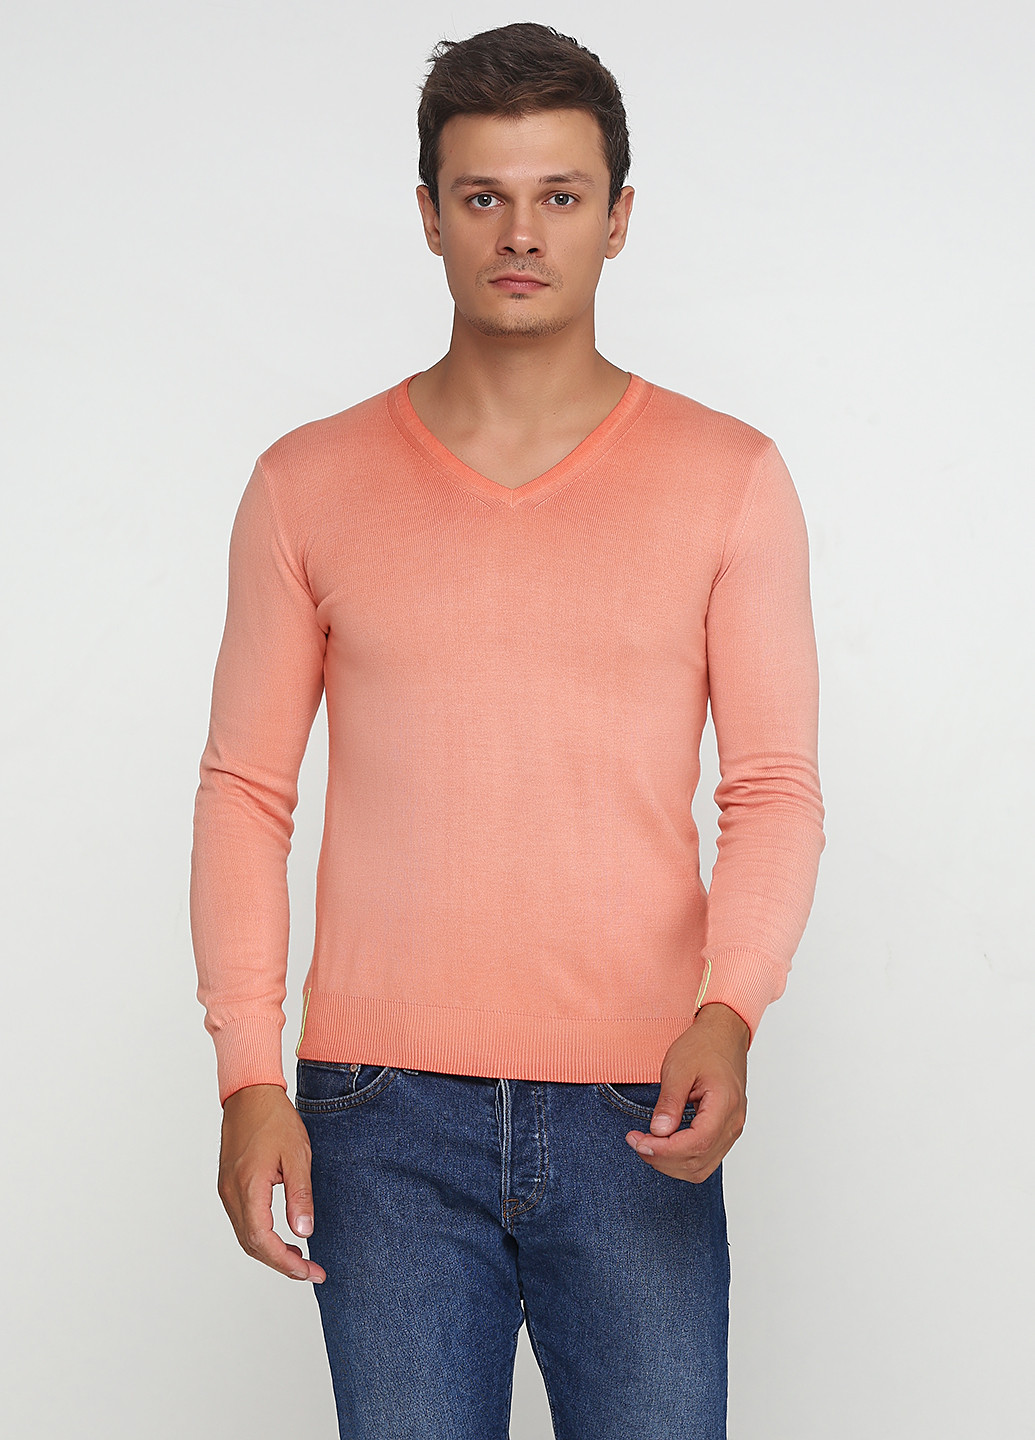 Персиковый демисезонный пуловер пуловер Daggs